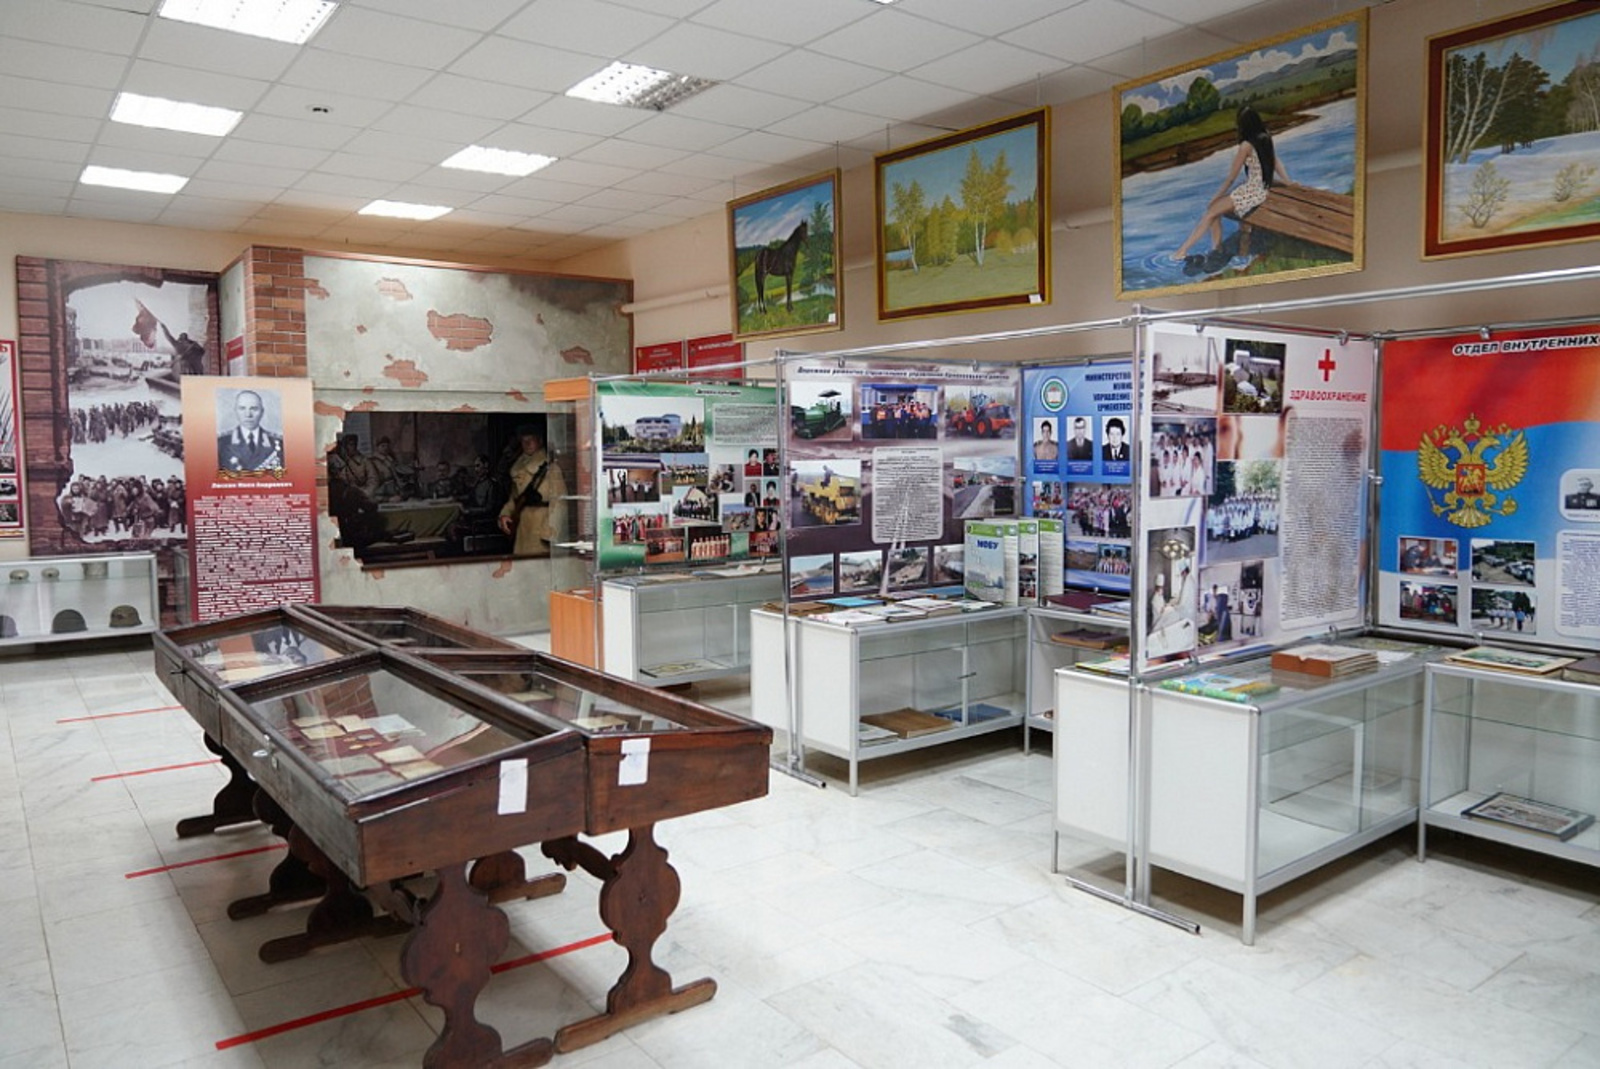 Радий Хабиров посетил парк Победы и историко-краеведческий музей в Ермекеево